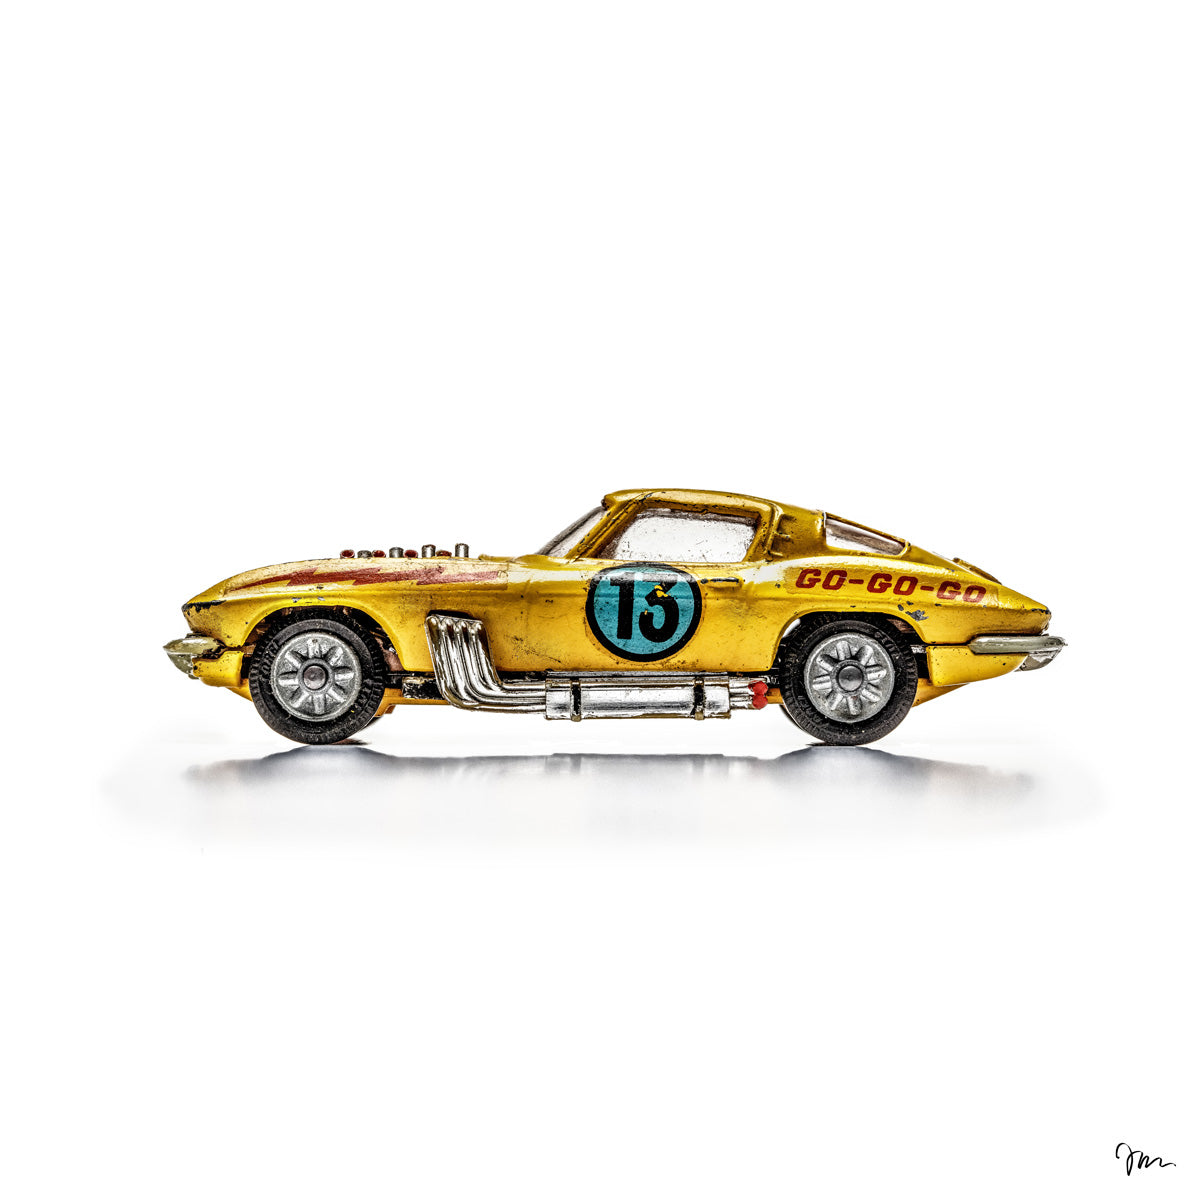 La Corvette Sting Ray #13